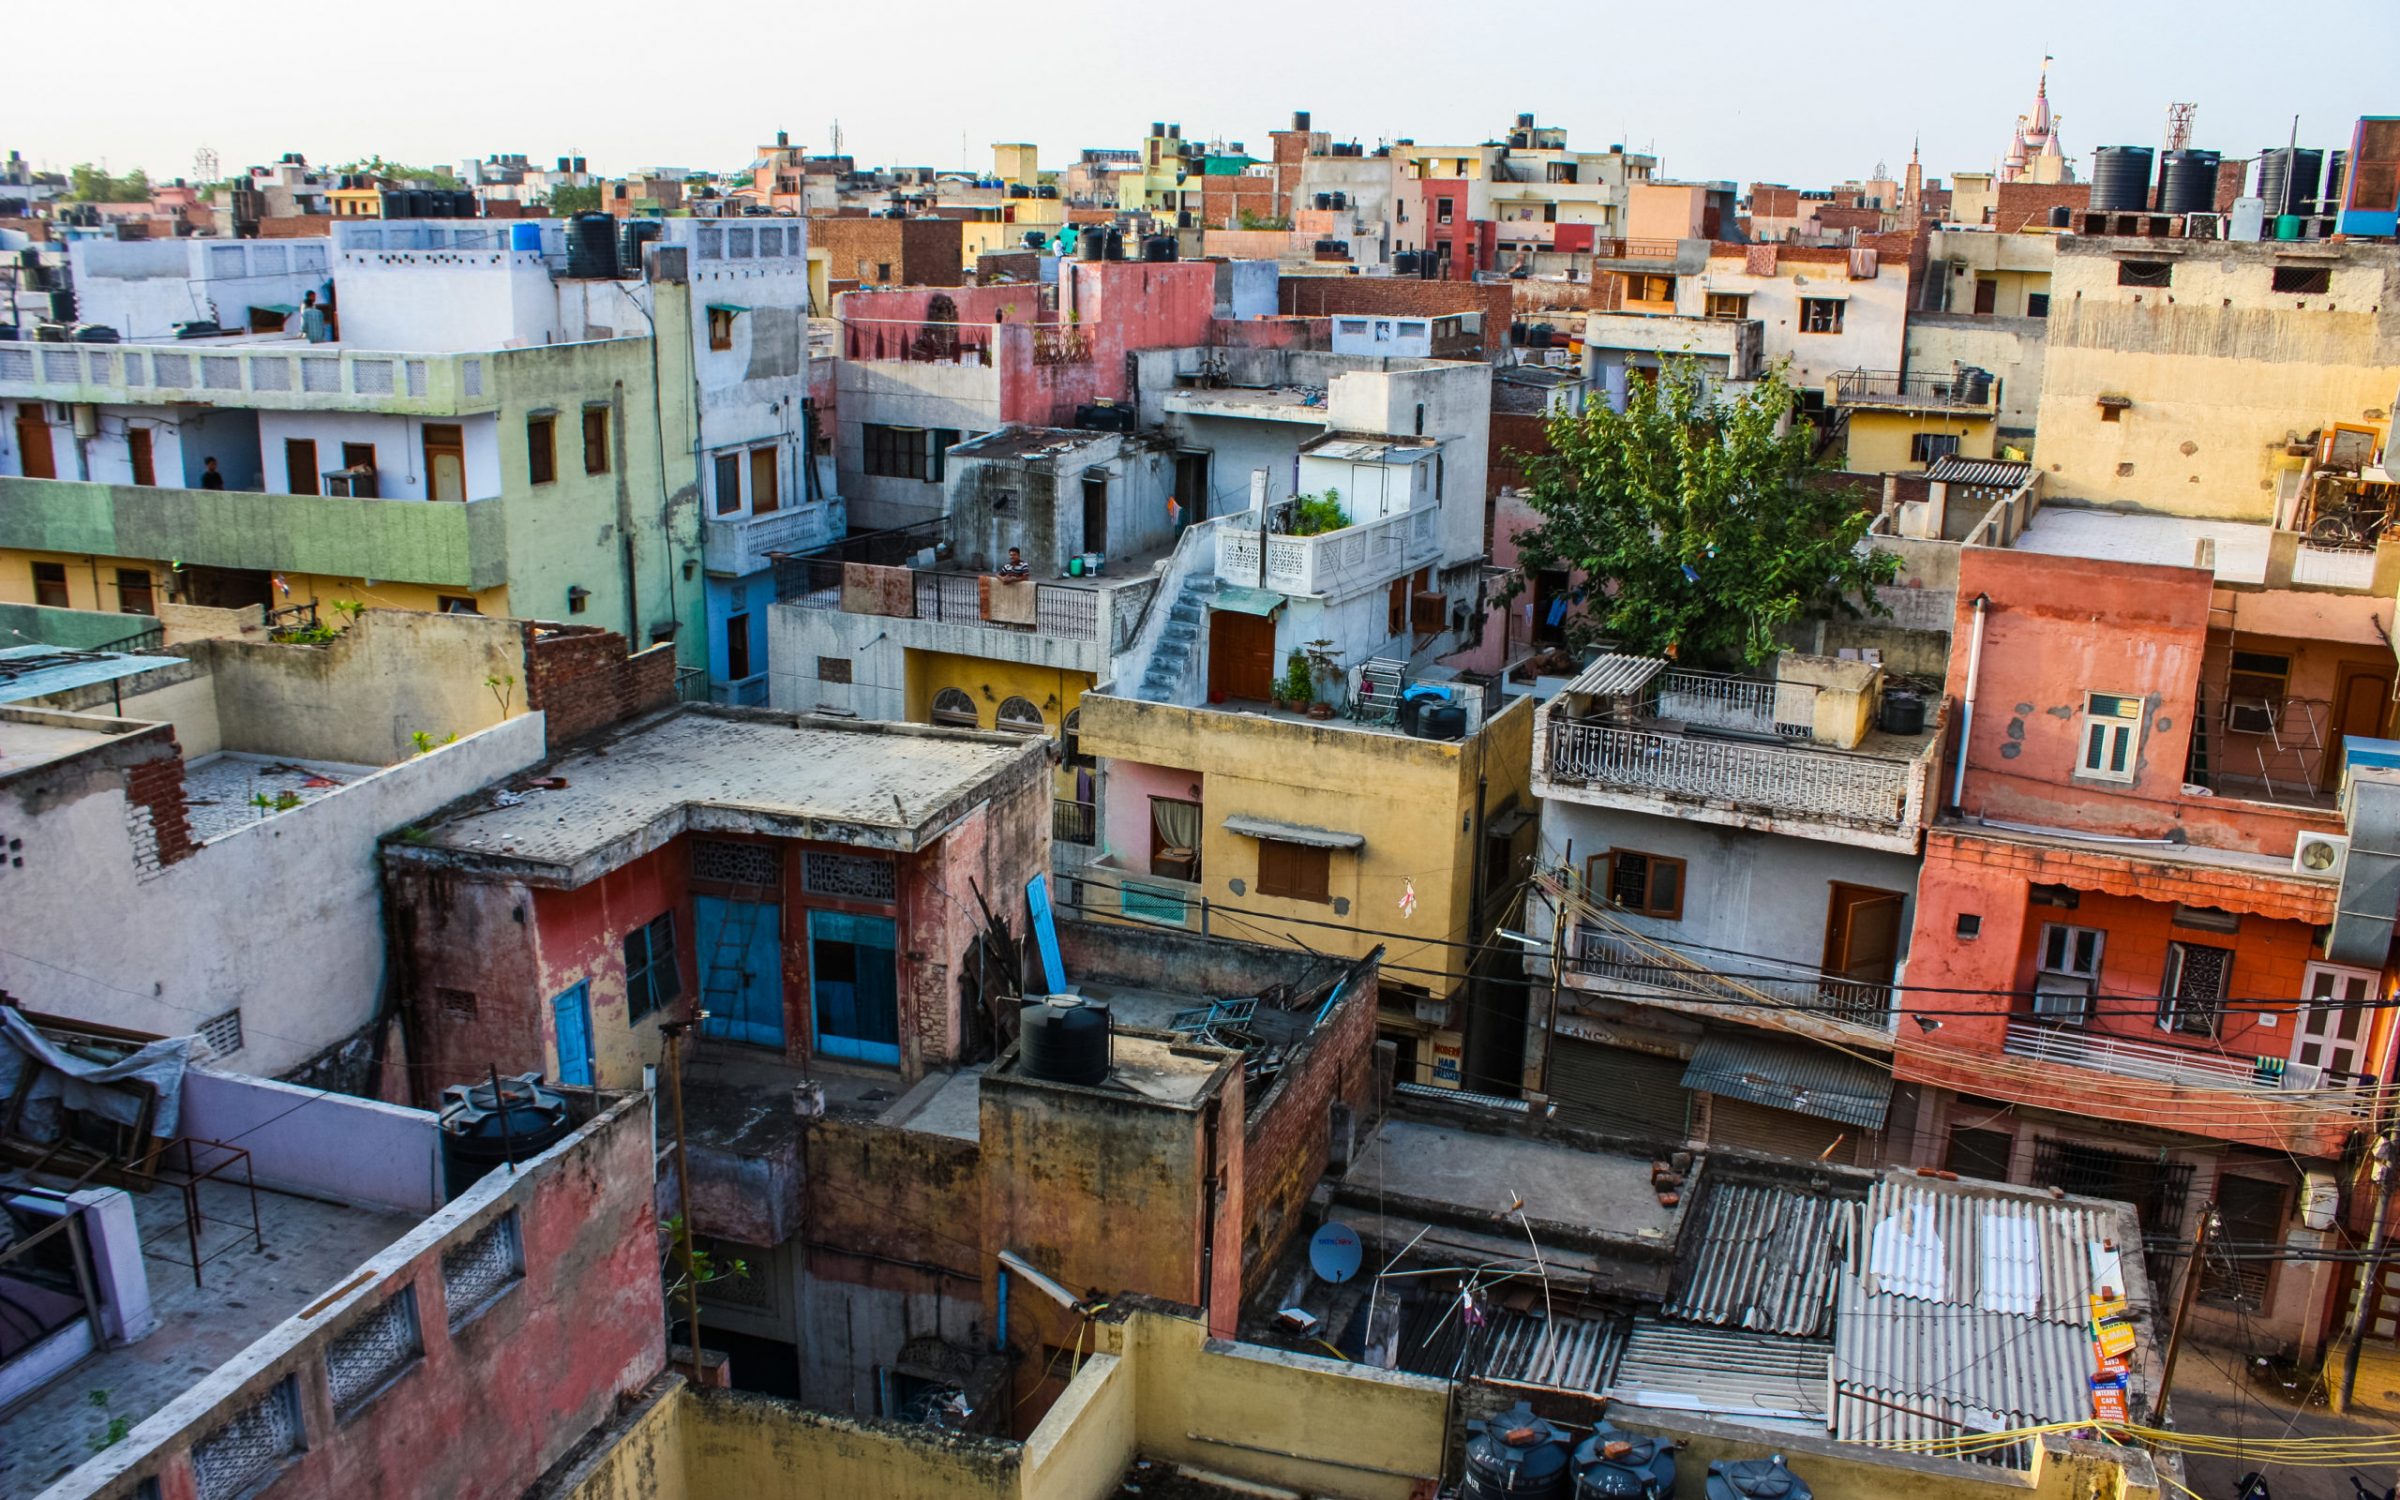 Rooftops in Delhi, India.